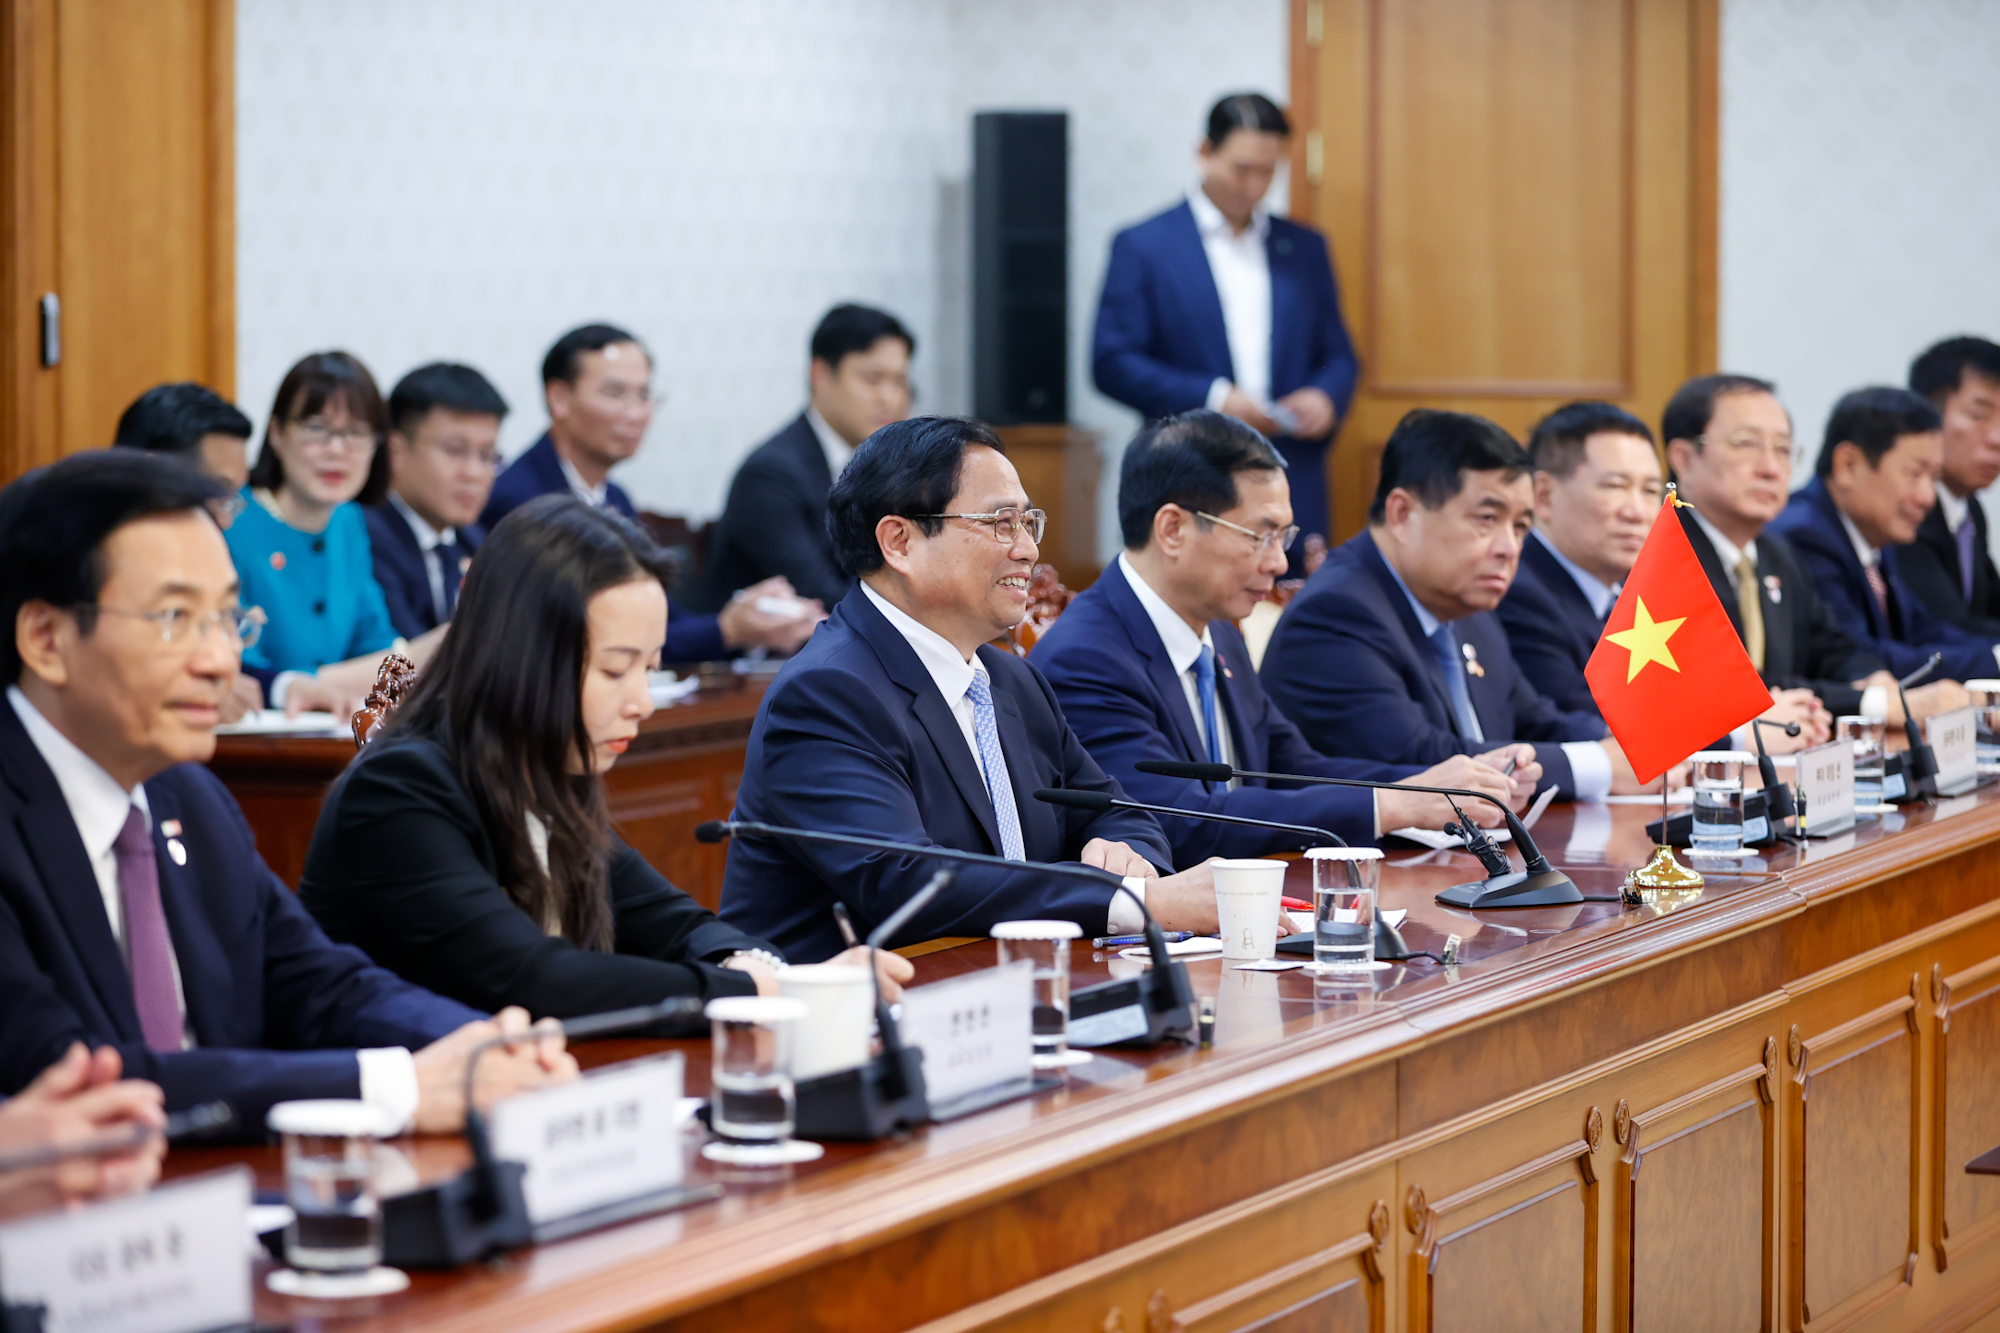 Thủ tướng Chính phủ Phạm Minh Chính cho biết Việt Nam coi trọng quan hệ với Hàn Quốc và mong muốn đưa hợp tác hai nước tiếp tục phát triển thực chất, hiệu quả và lâu dài, tương xứng với quan hệ Đối tác chiến lược toàn diện - Ảnh: VGP/Nhật Bắc